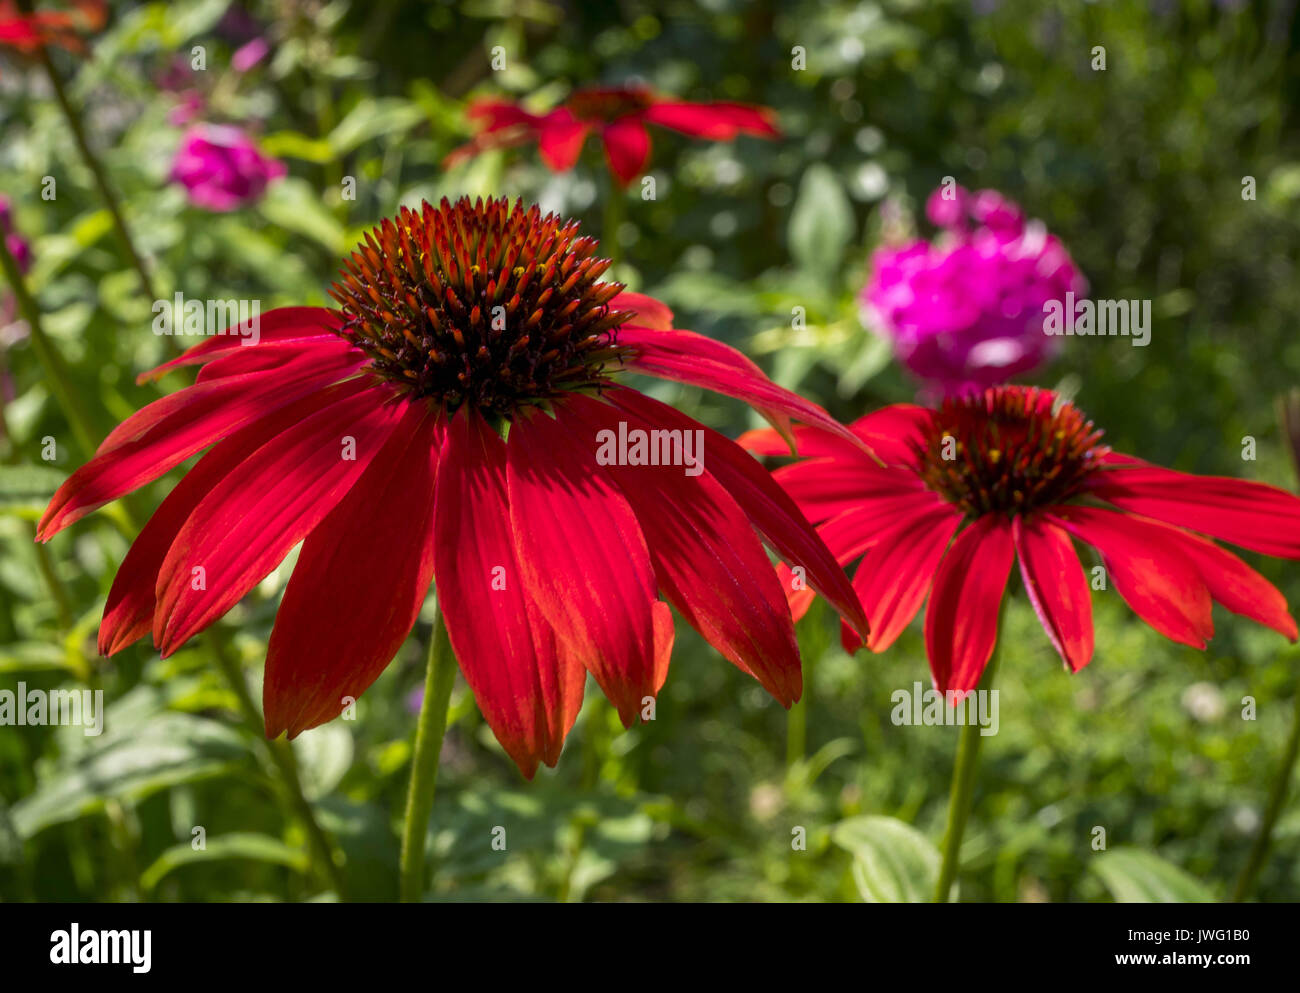 Rote Rudbeckie, Roter Sonnenhut oder Purpur-Sonnenhut (Echinacea purpurea), Bayern, Deutschland, Europa Banque D'Images